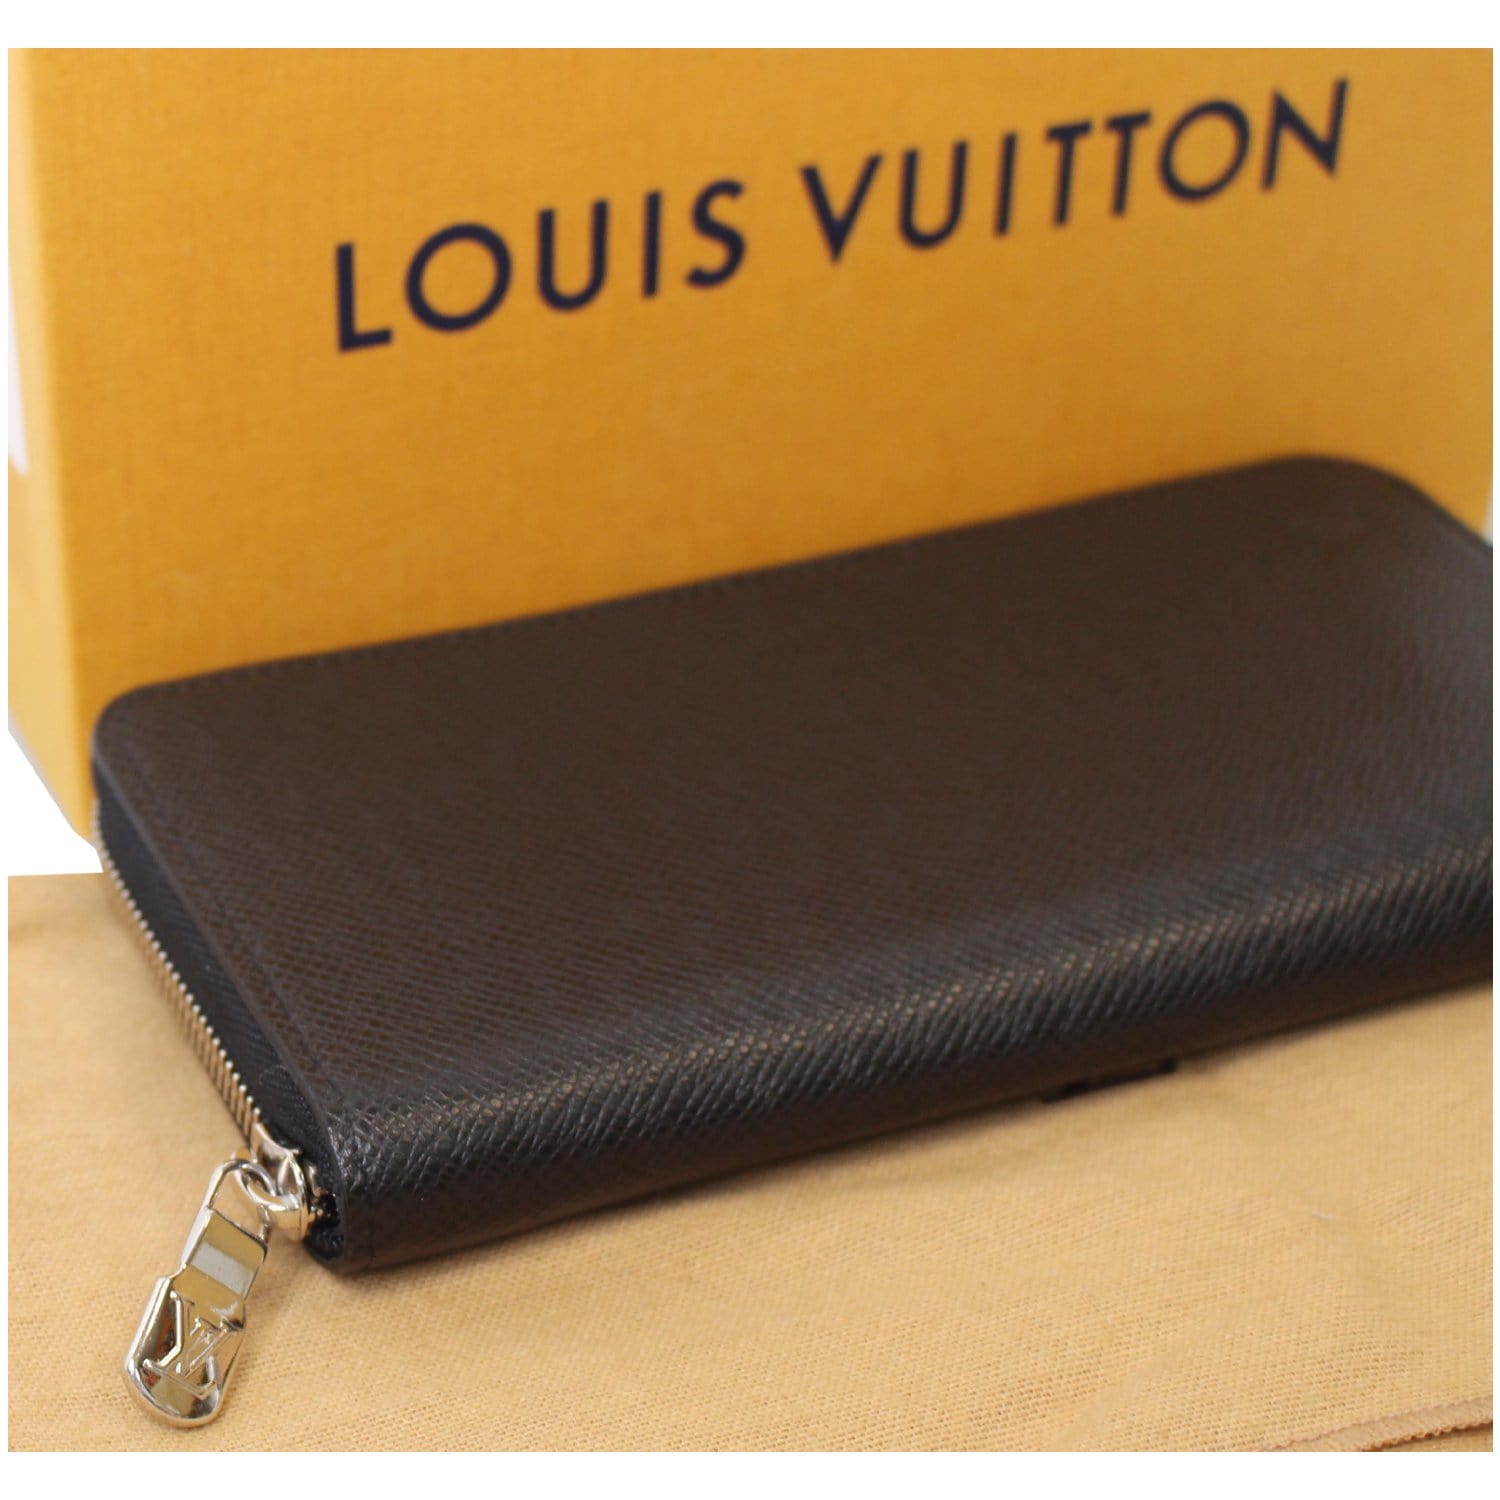 Louis Vuitton Mens Long Wallets, Black